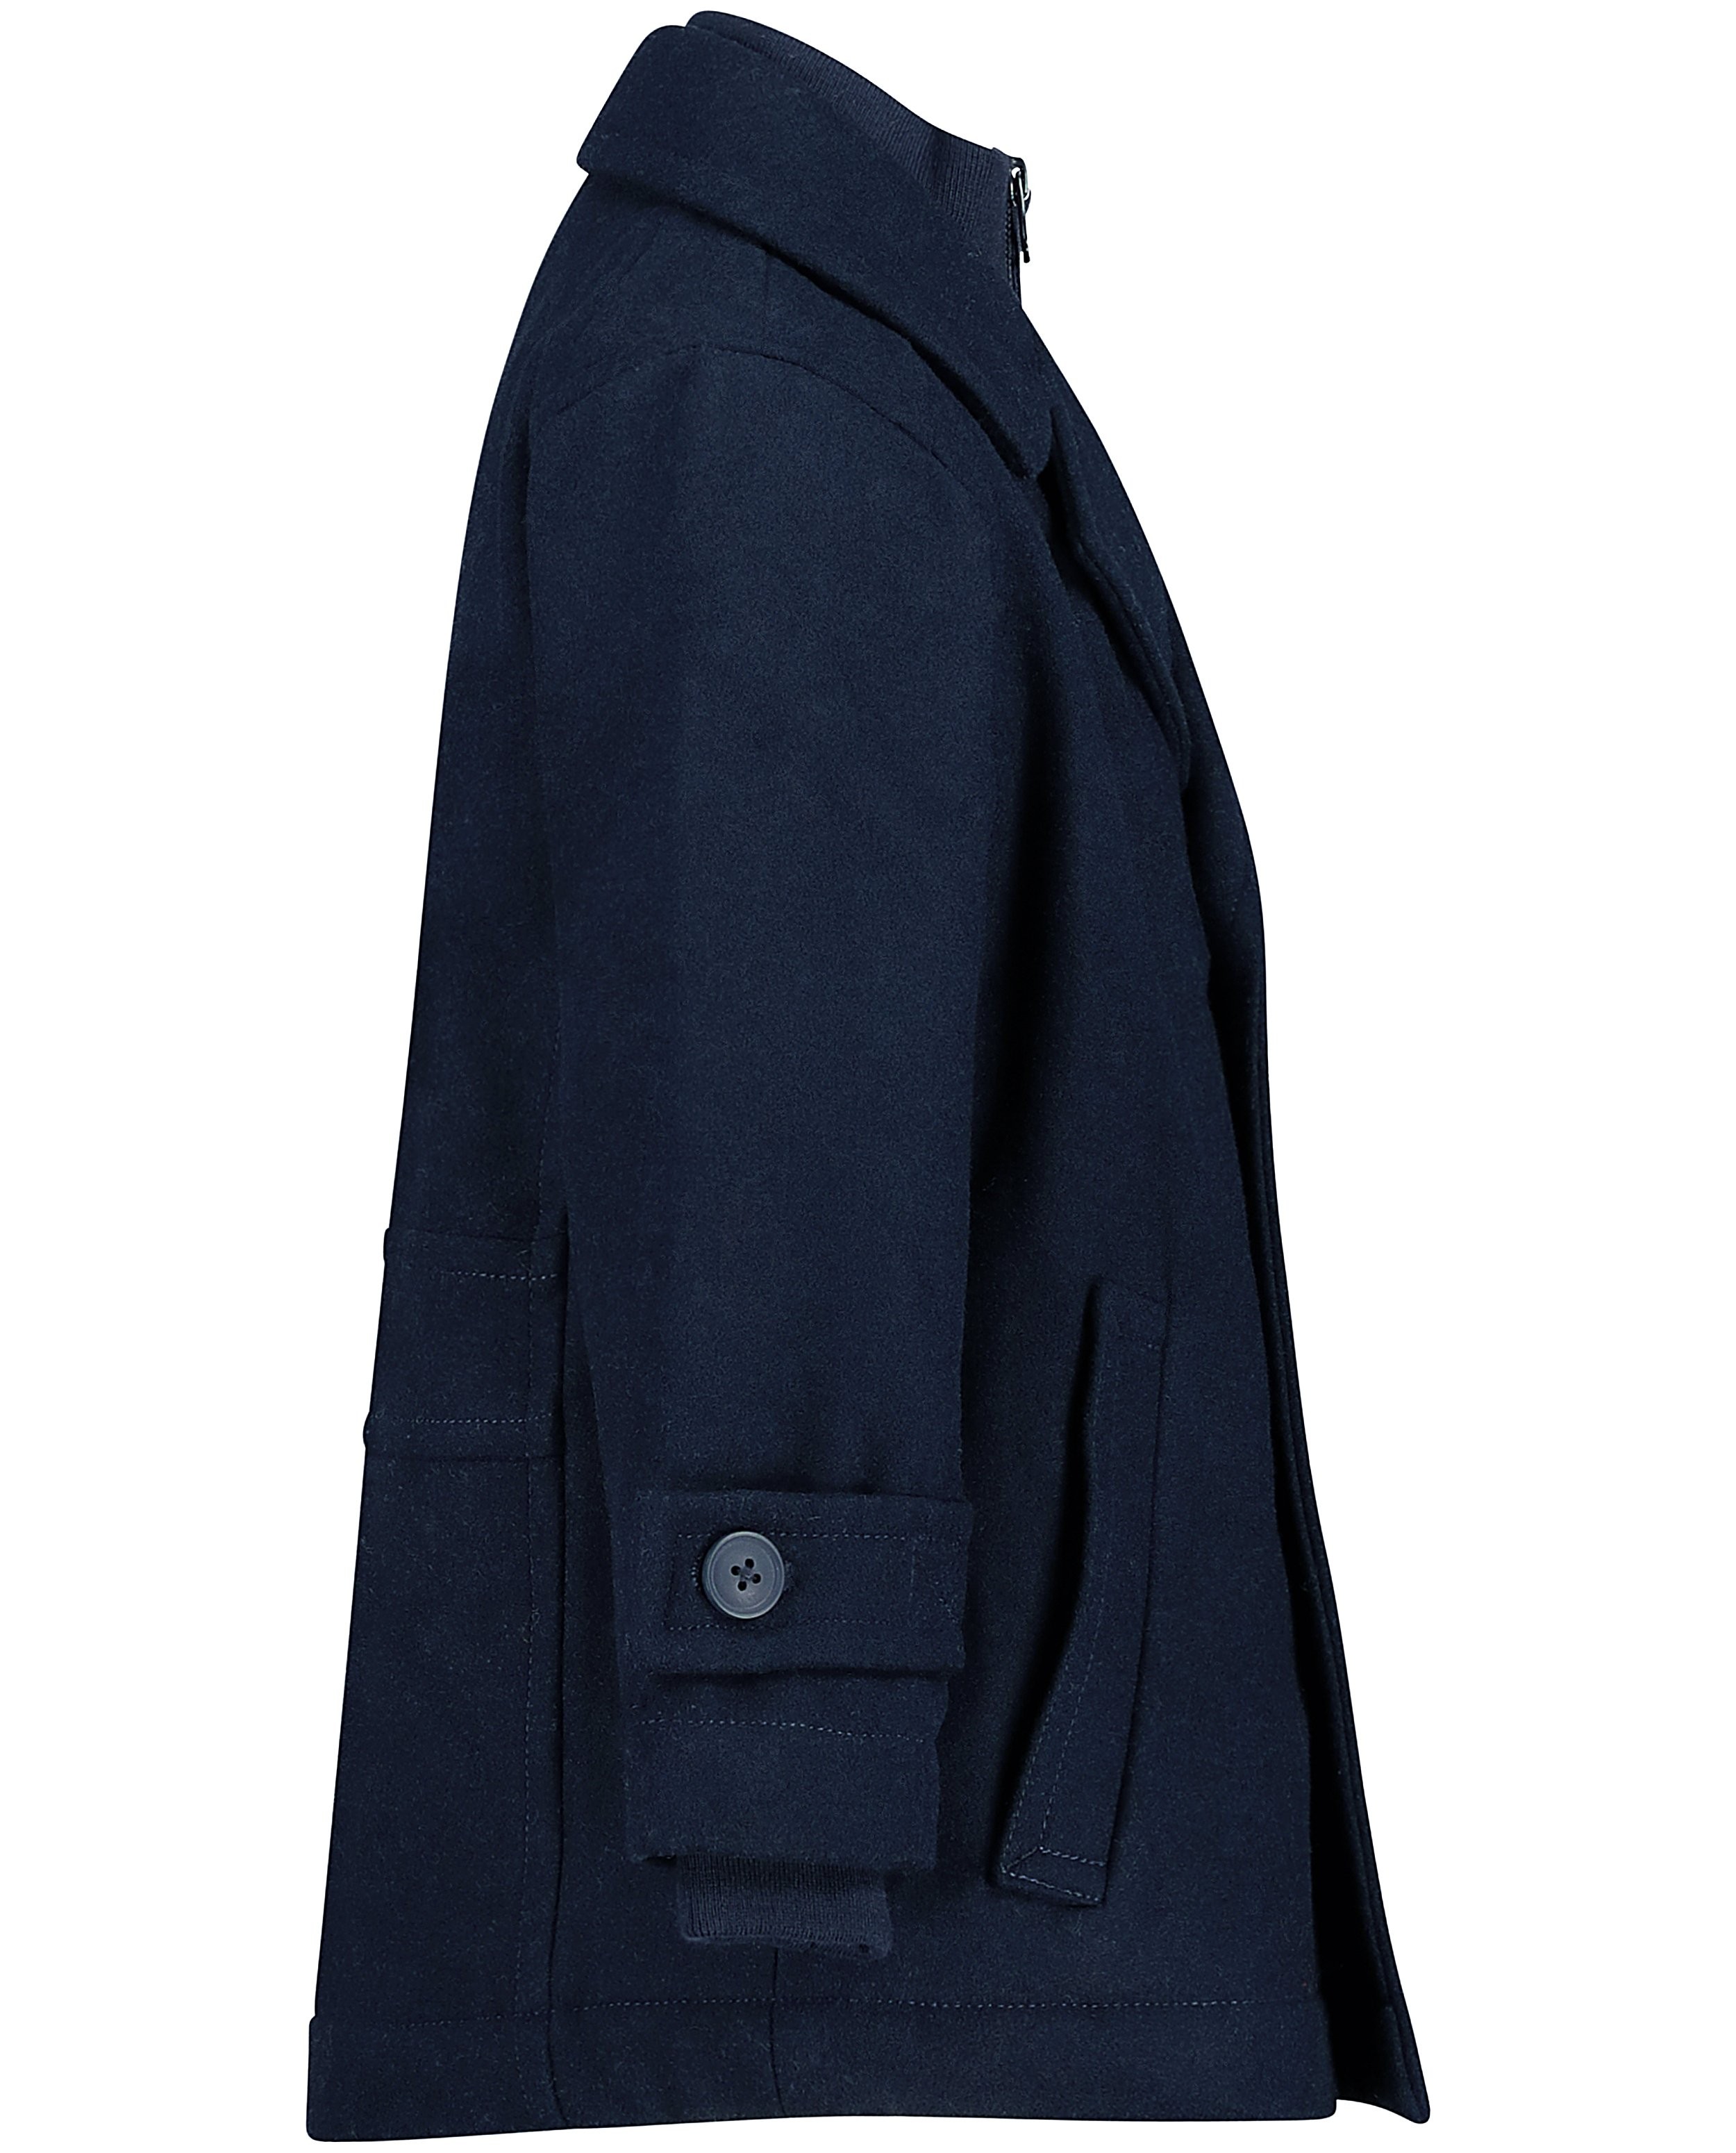 Jassen - Nachtblauwe mantel